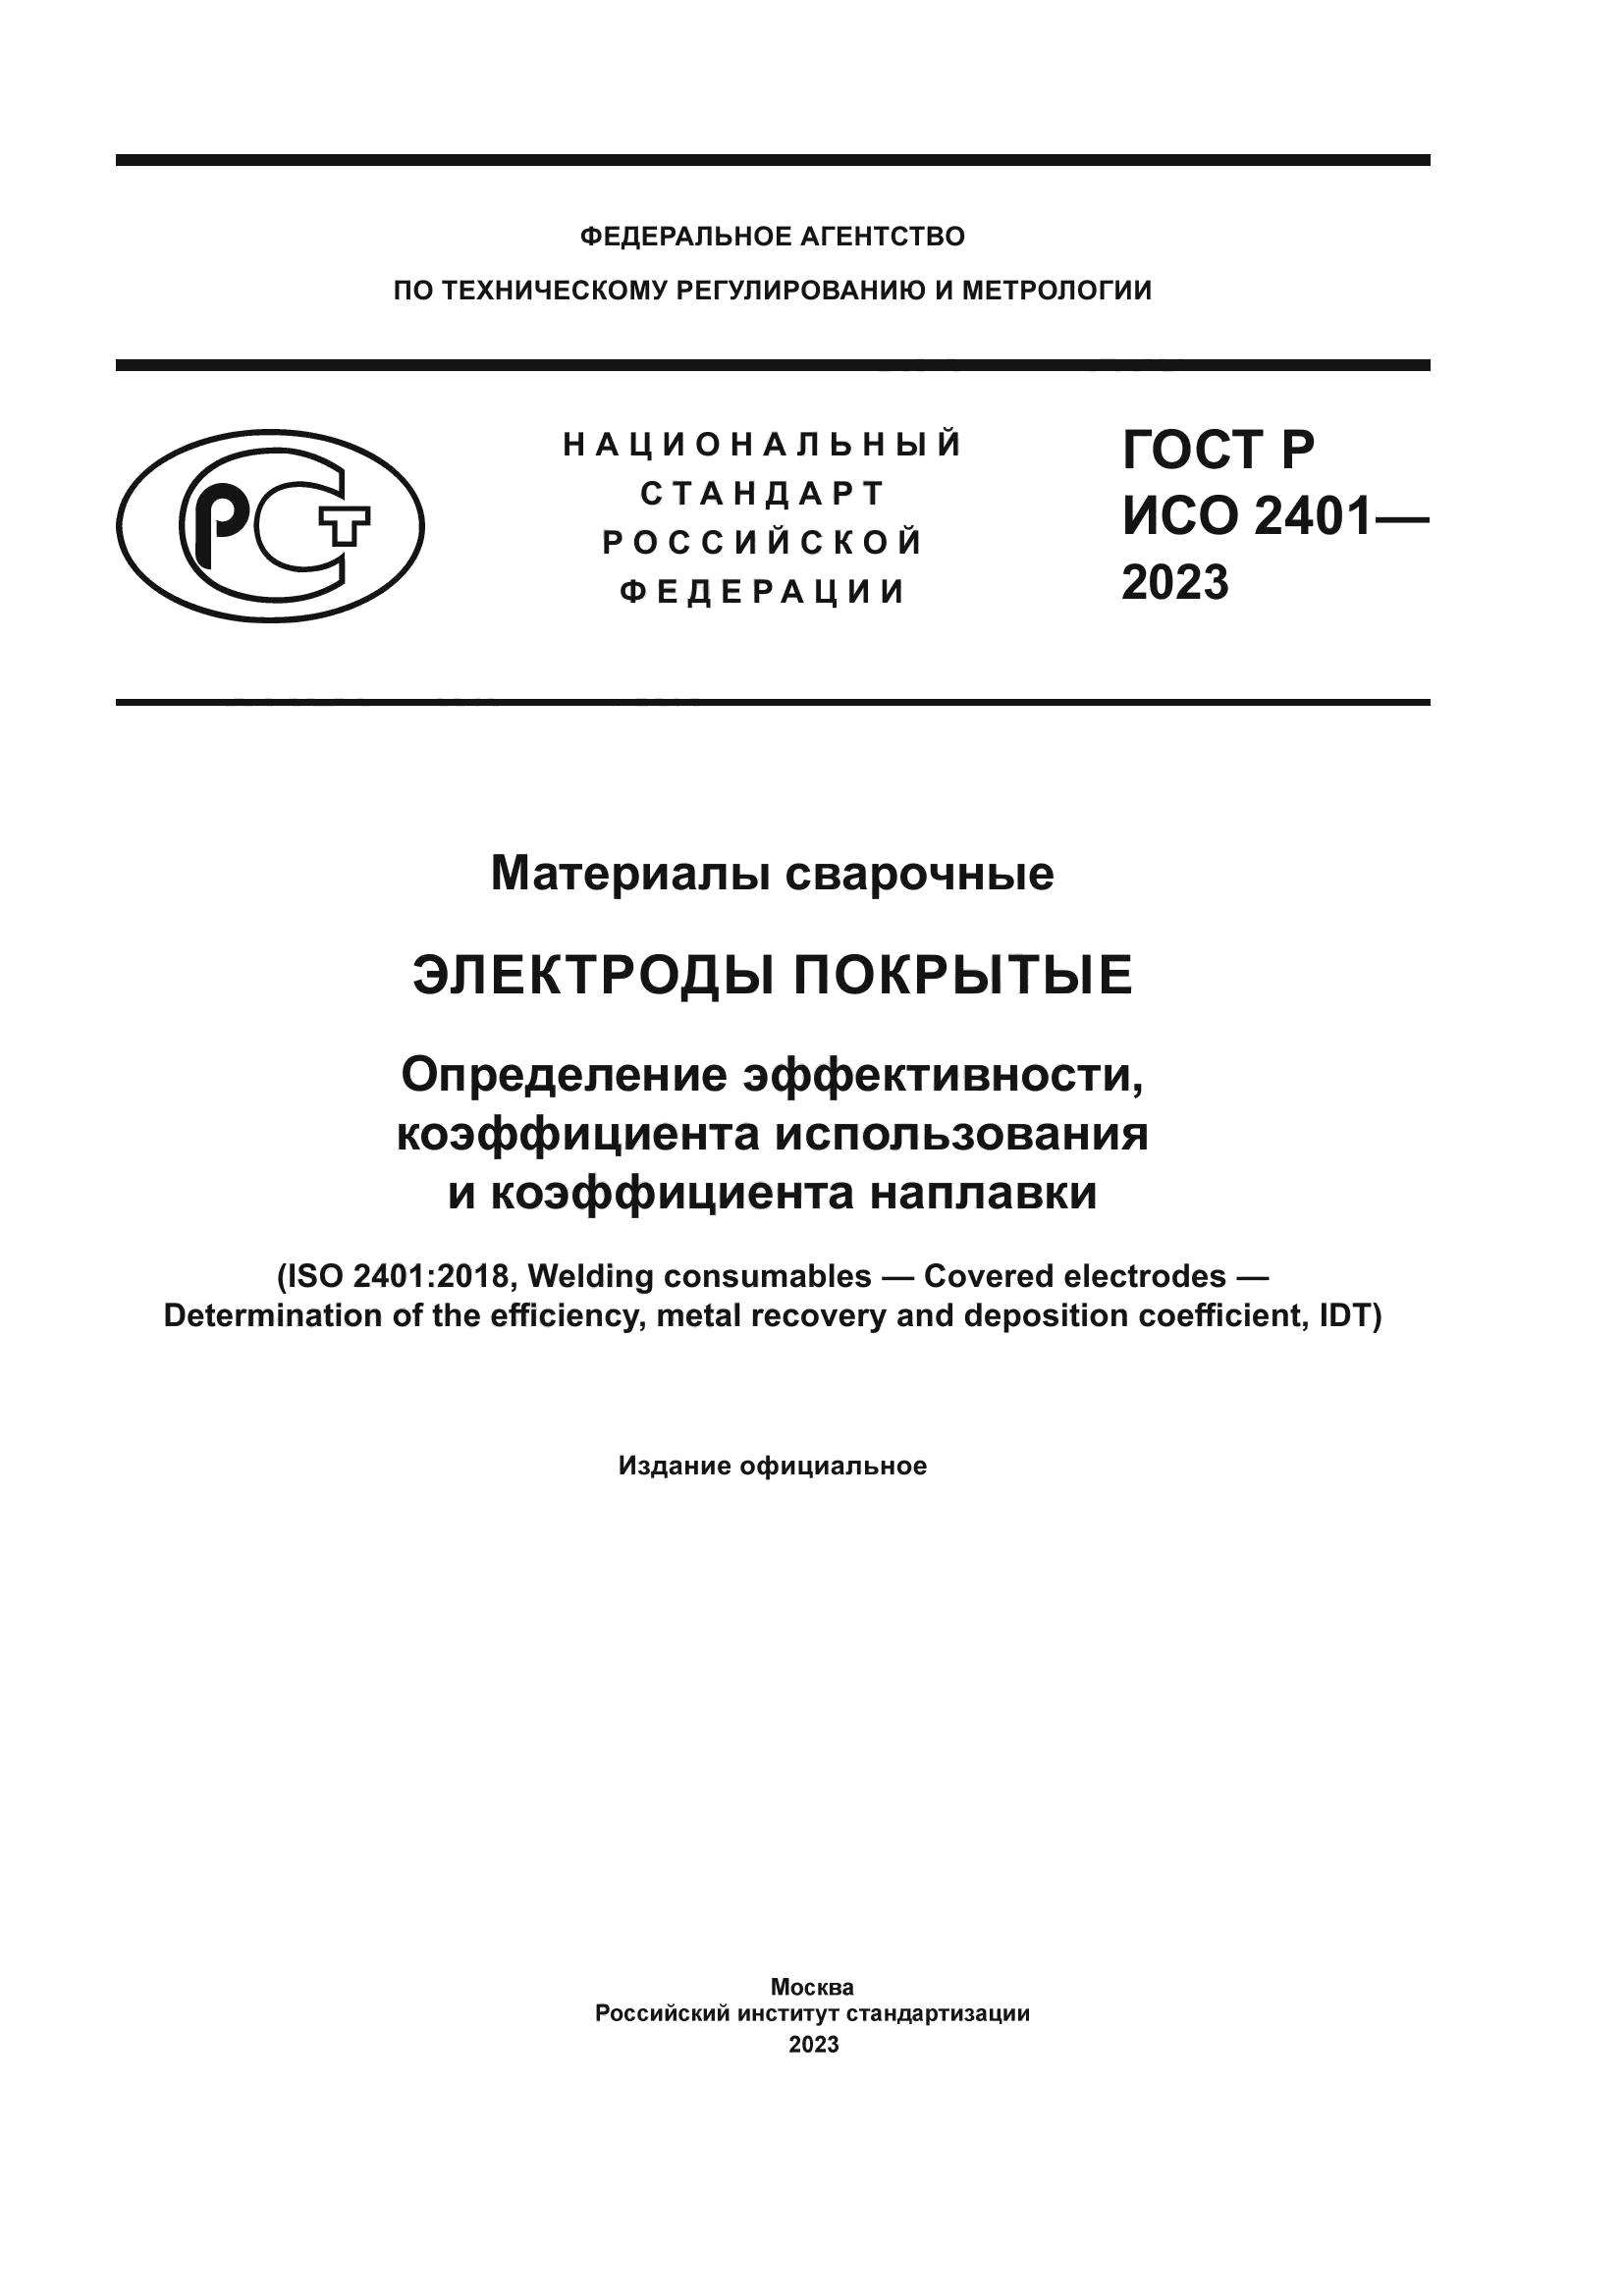 ГОСТ Р ИСО 2401-2023